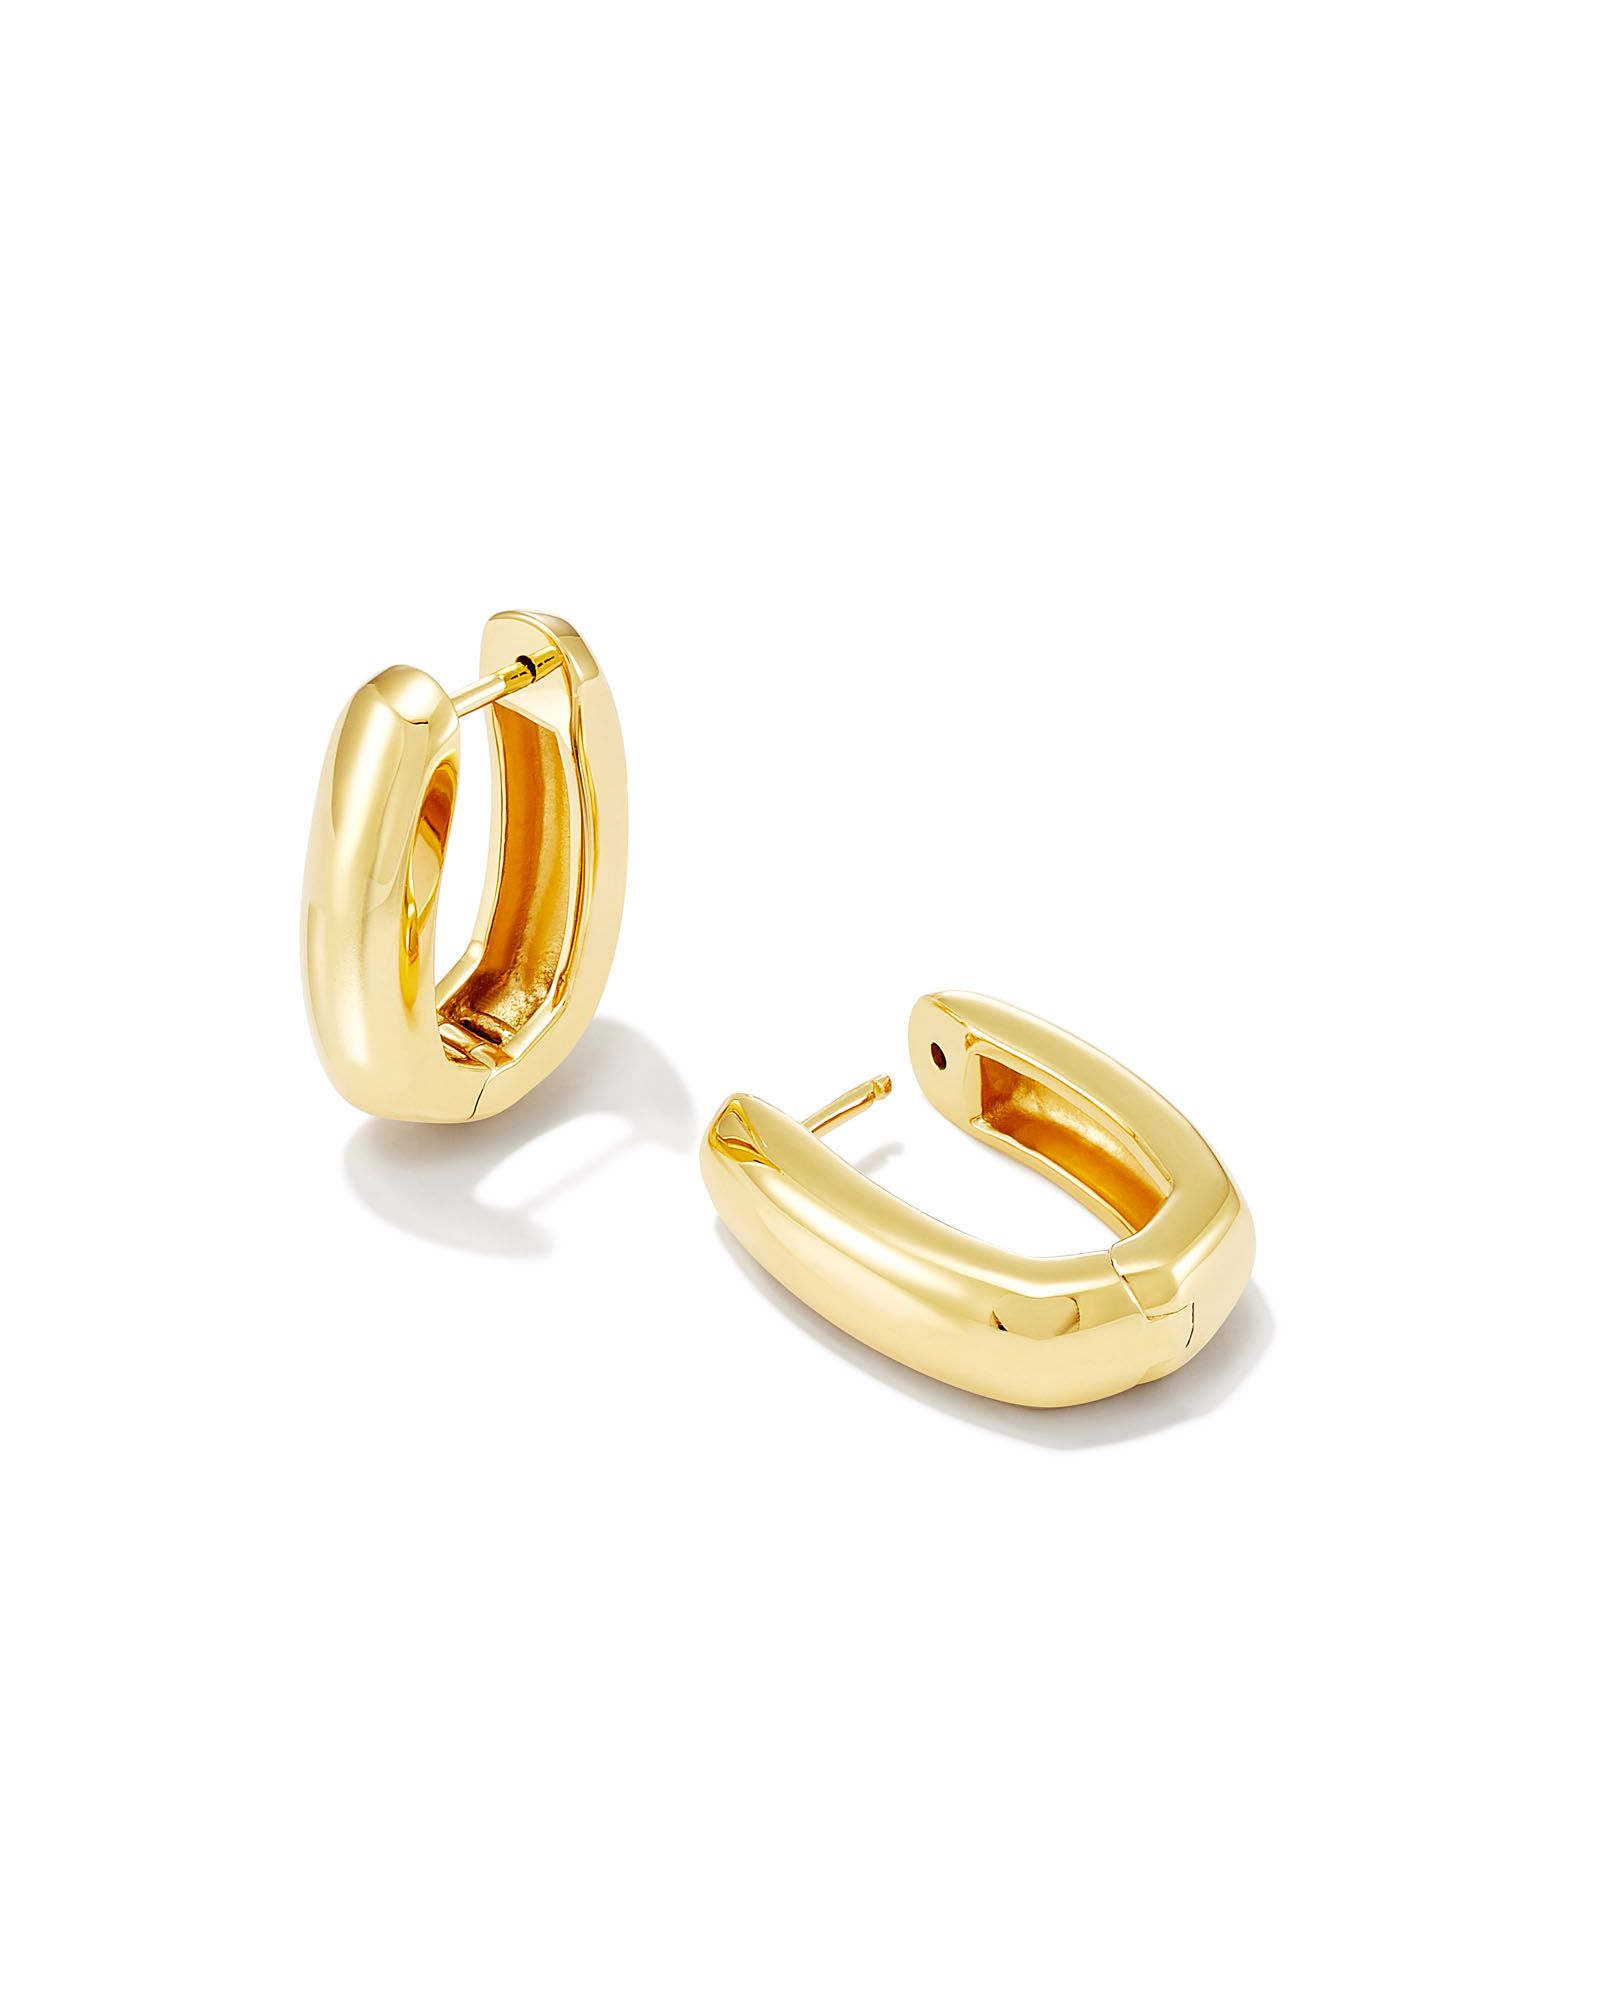 Ellen Wide Huggie Earrings in 18k Gold Vermeil | Kendra Scott | Kendra Scott